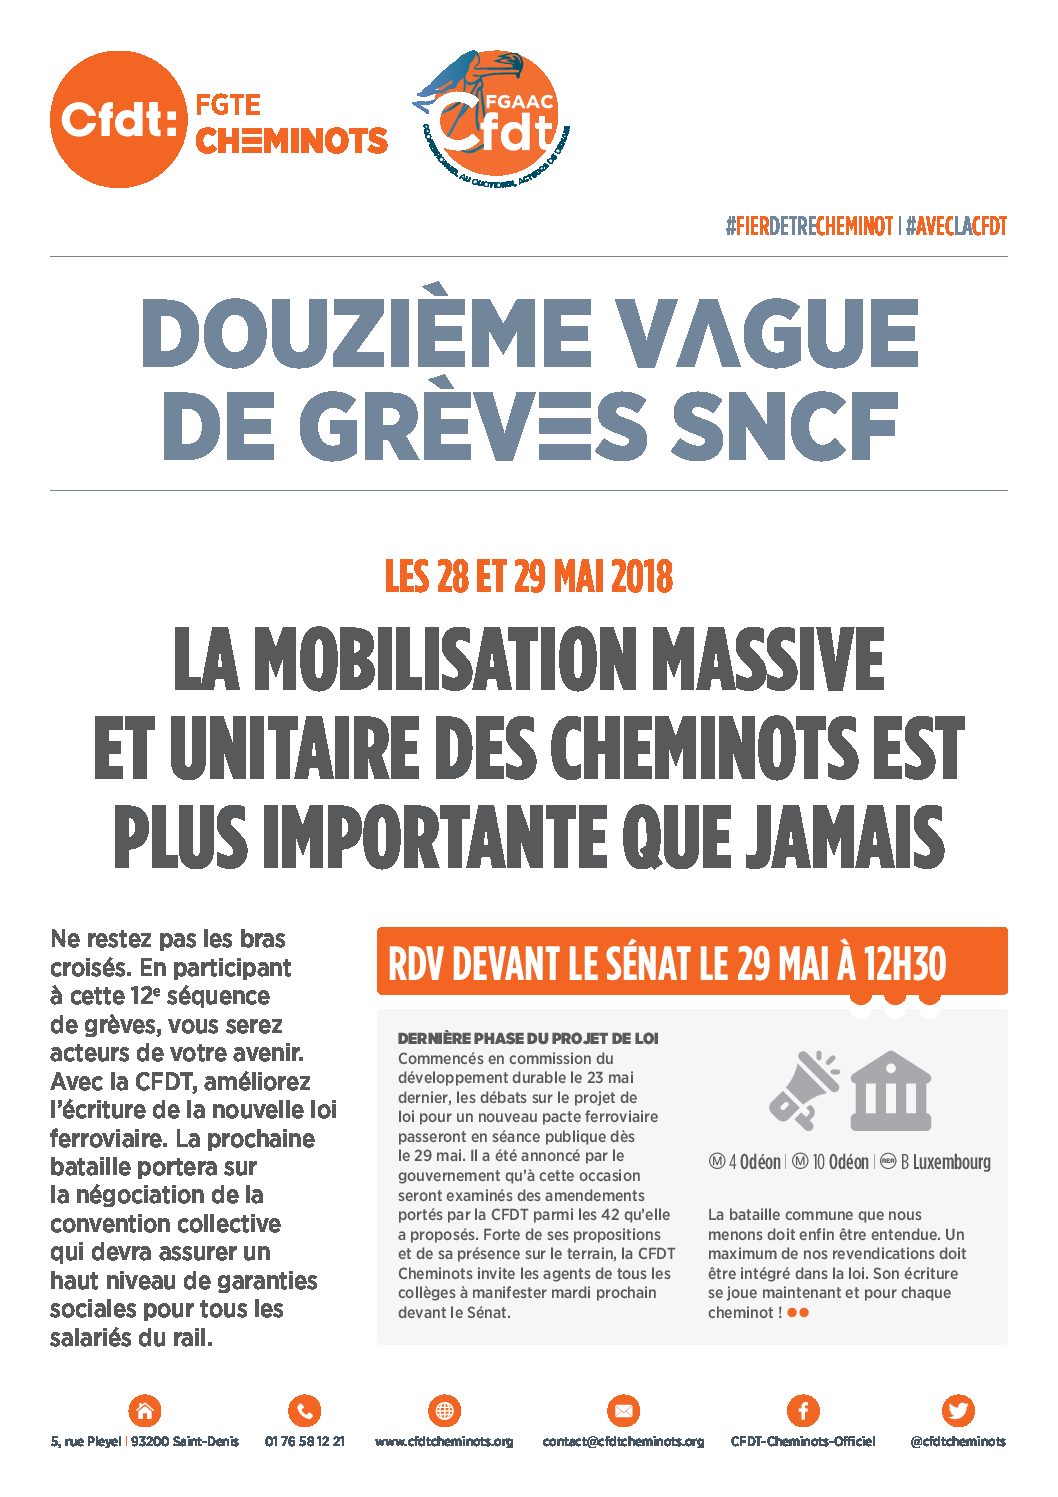 DIXIÈME VAGUE DE GRÈVES SNCF